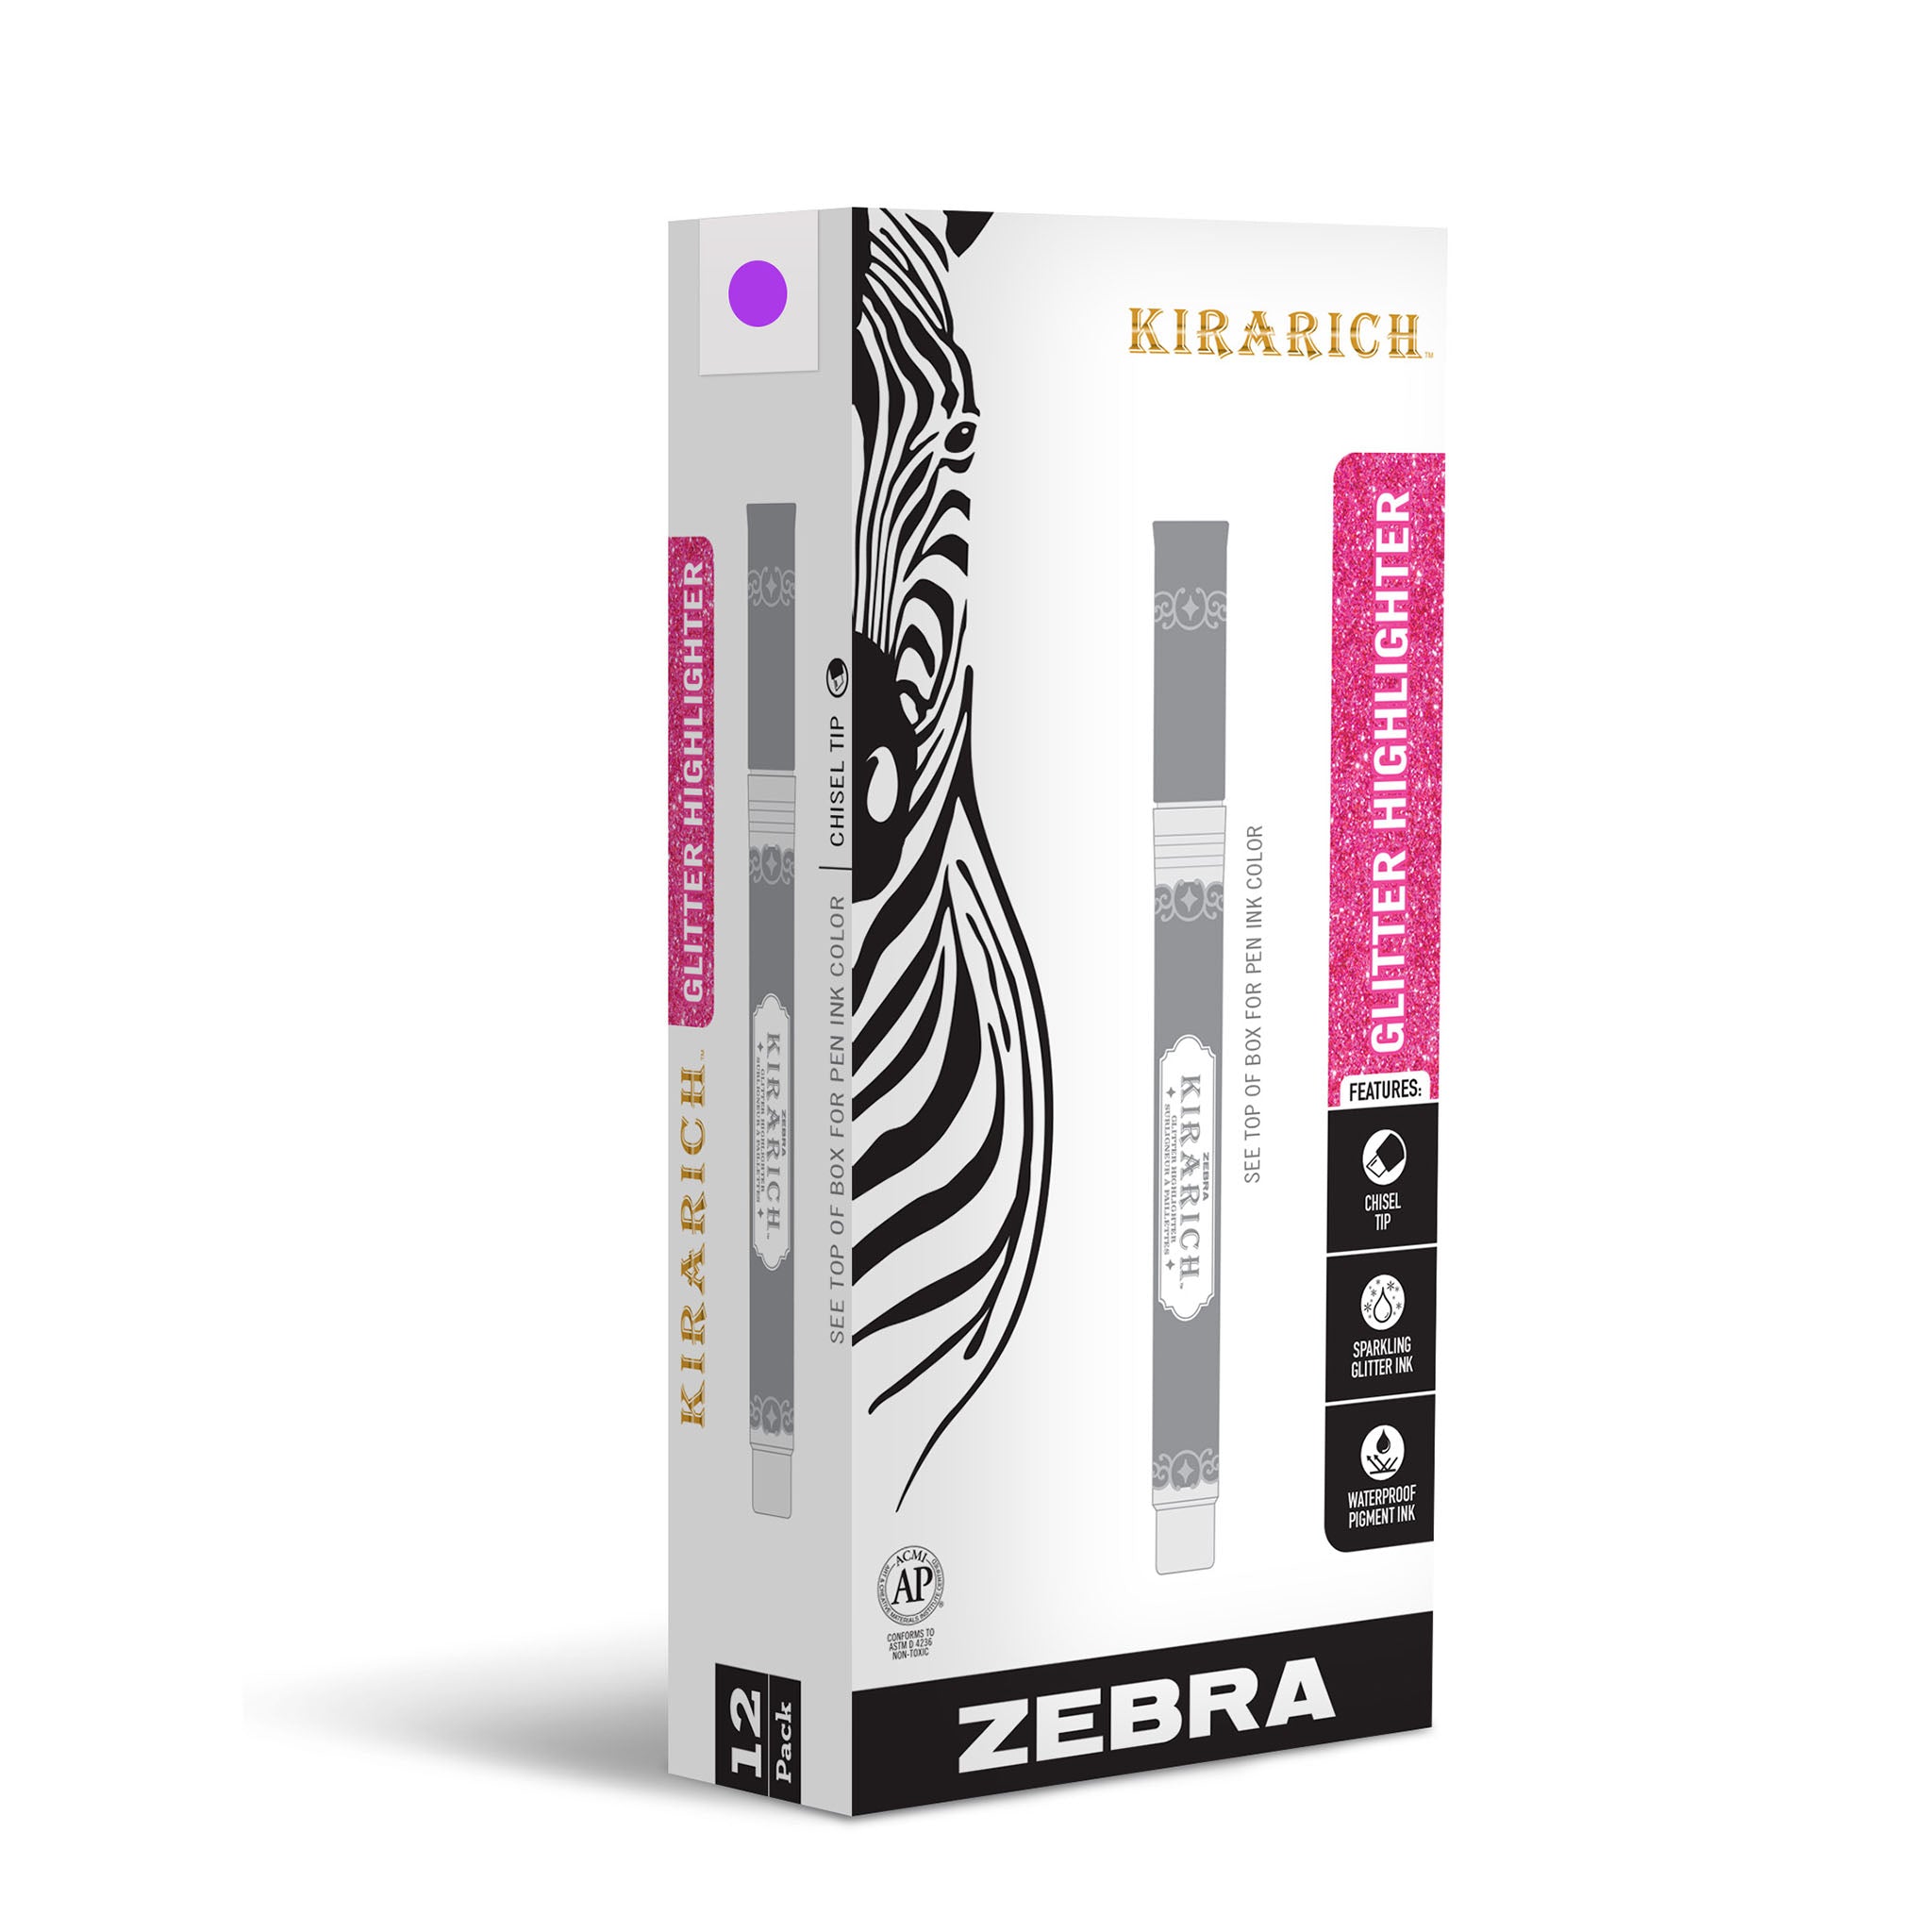 Zebra Kirarich Kira Rich PURPLE GLITTER Highlighter Pearlescent